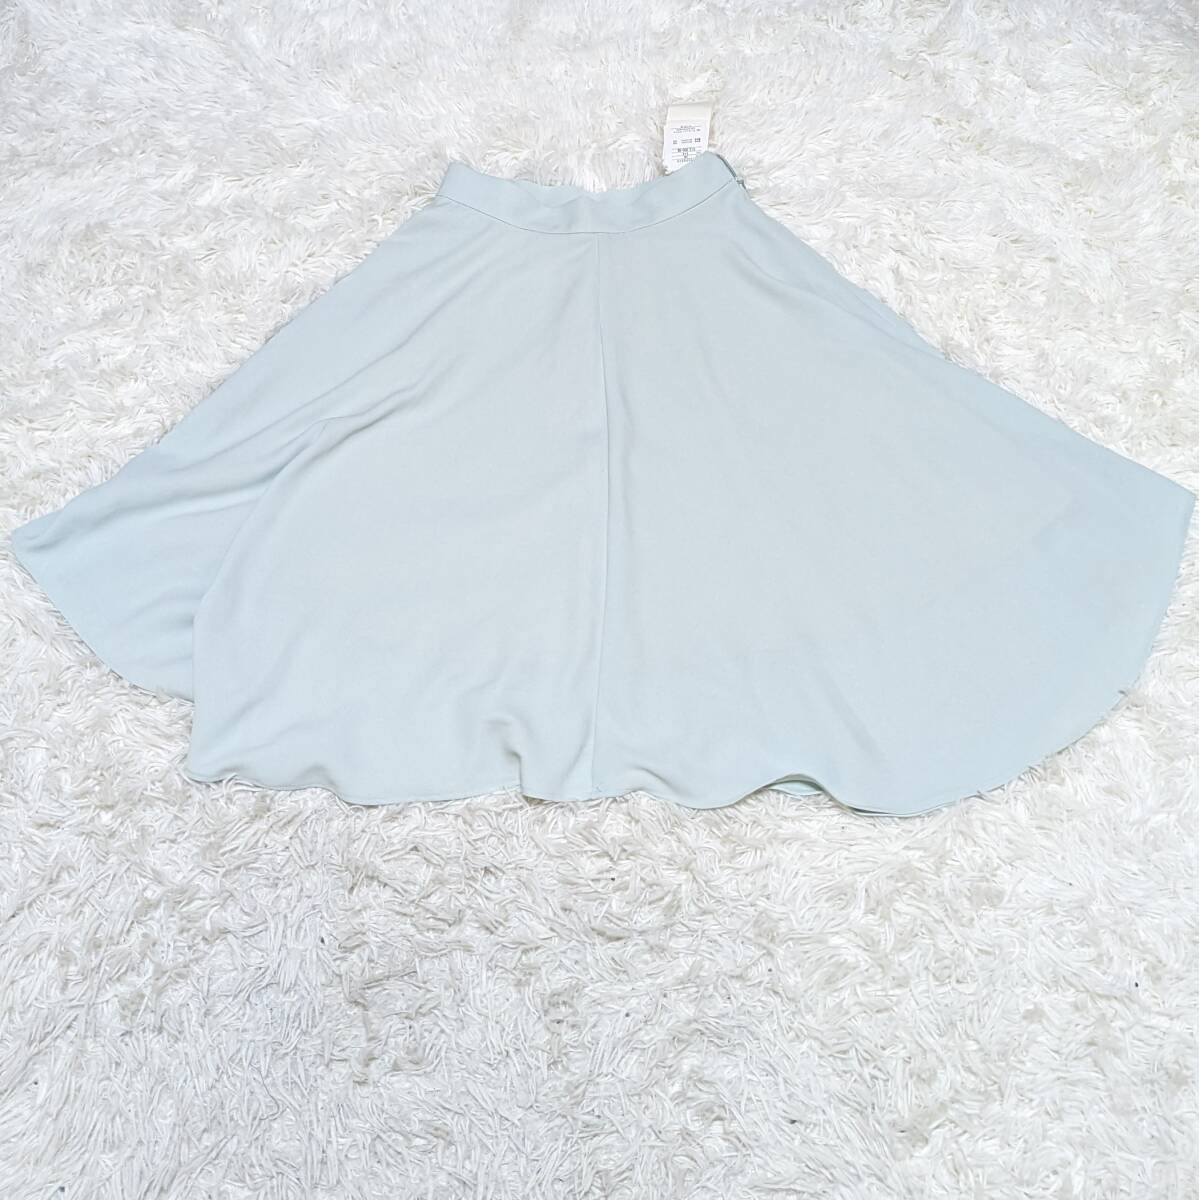 【BANNER BARRETT】バナーバレット セール品 スカート 36サイズ 女性 レディース ミント色【YTLS-117】_画像2